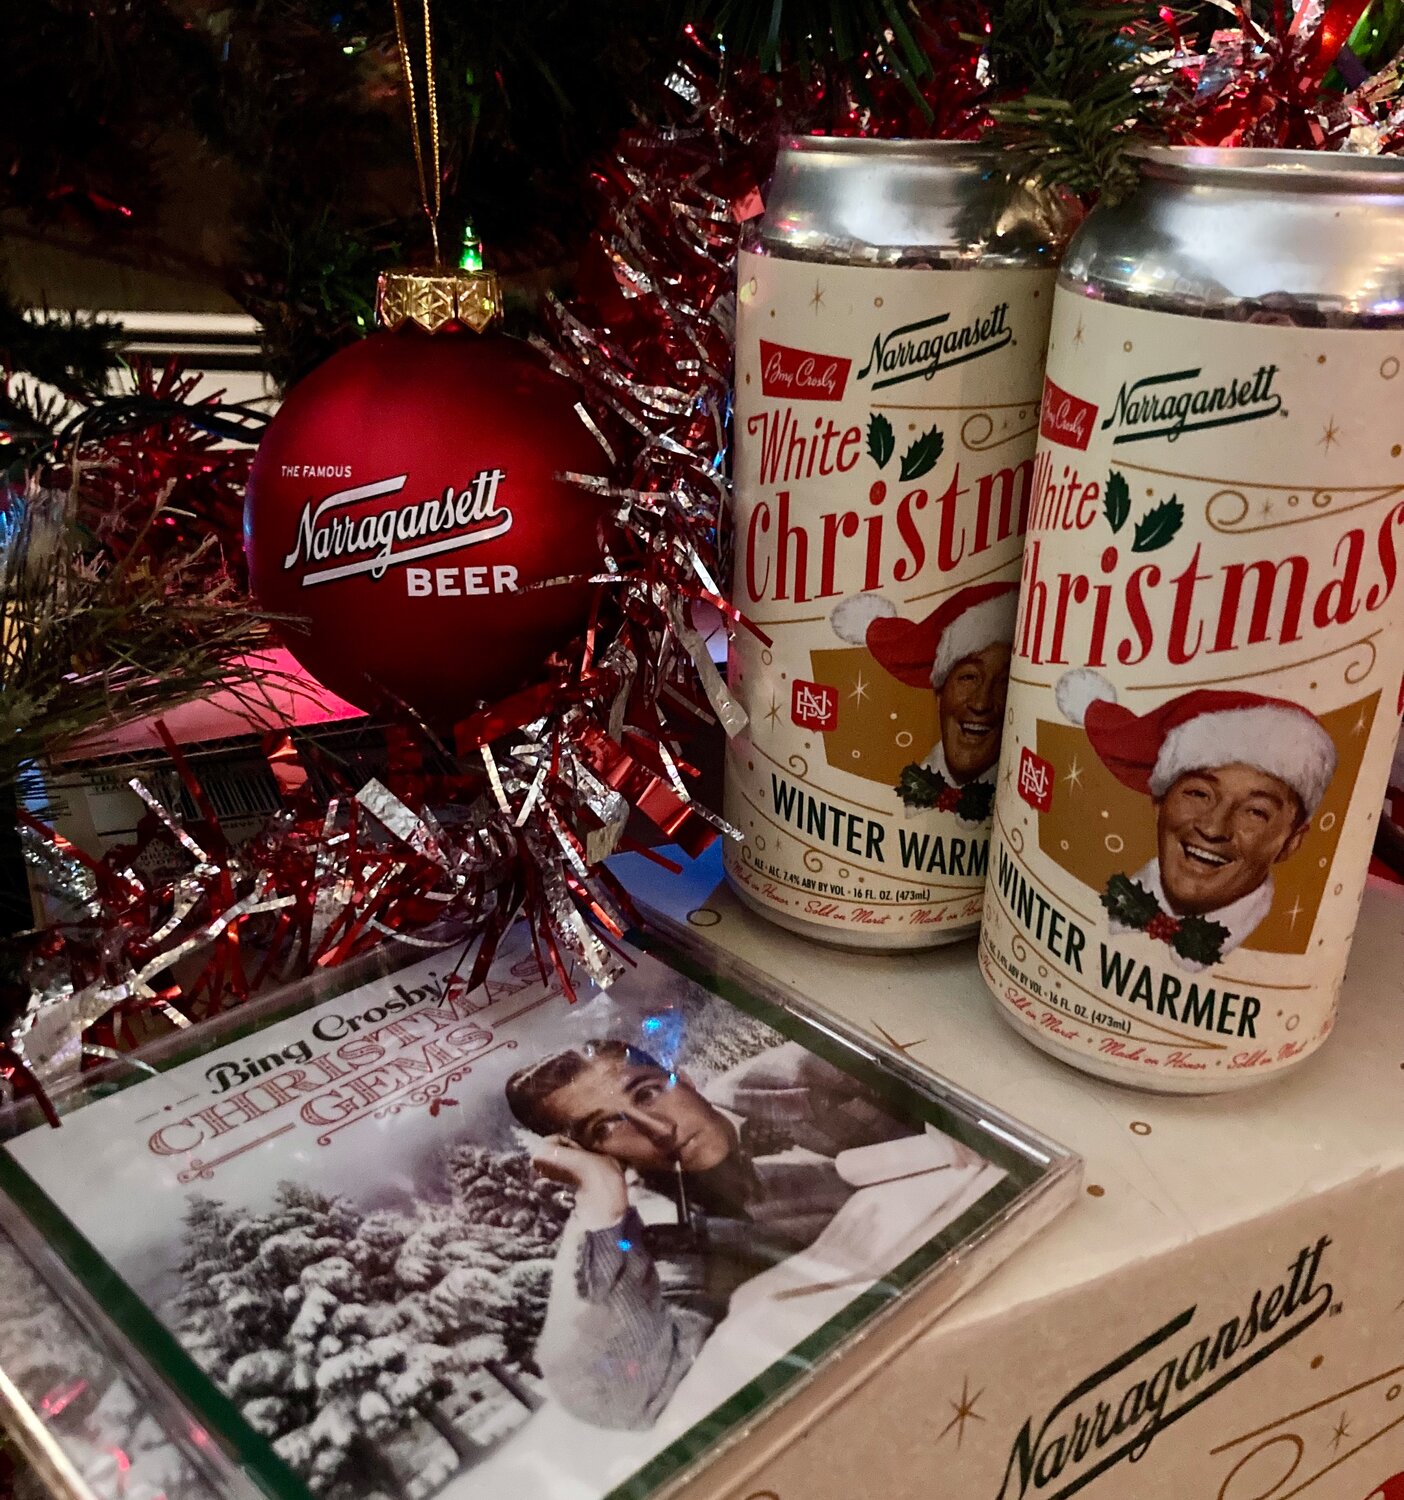 Narragansett Beer's White Christmas Winter Warmer and festive merch